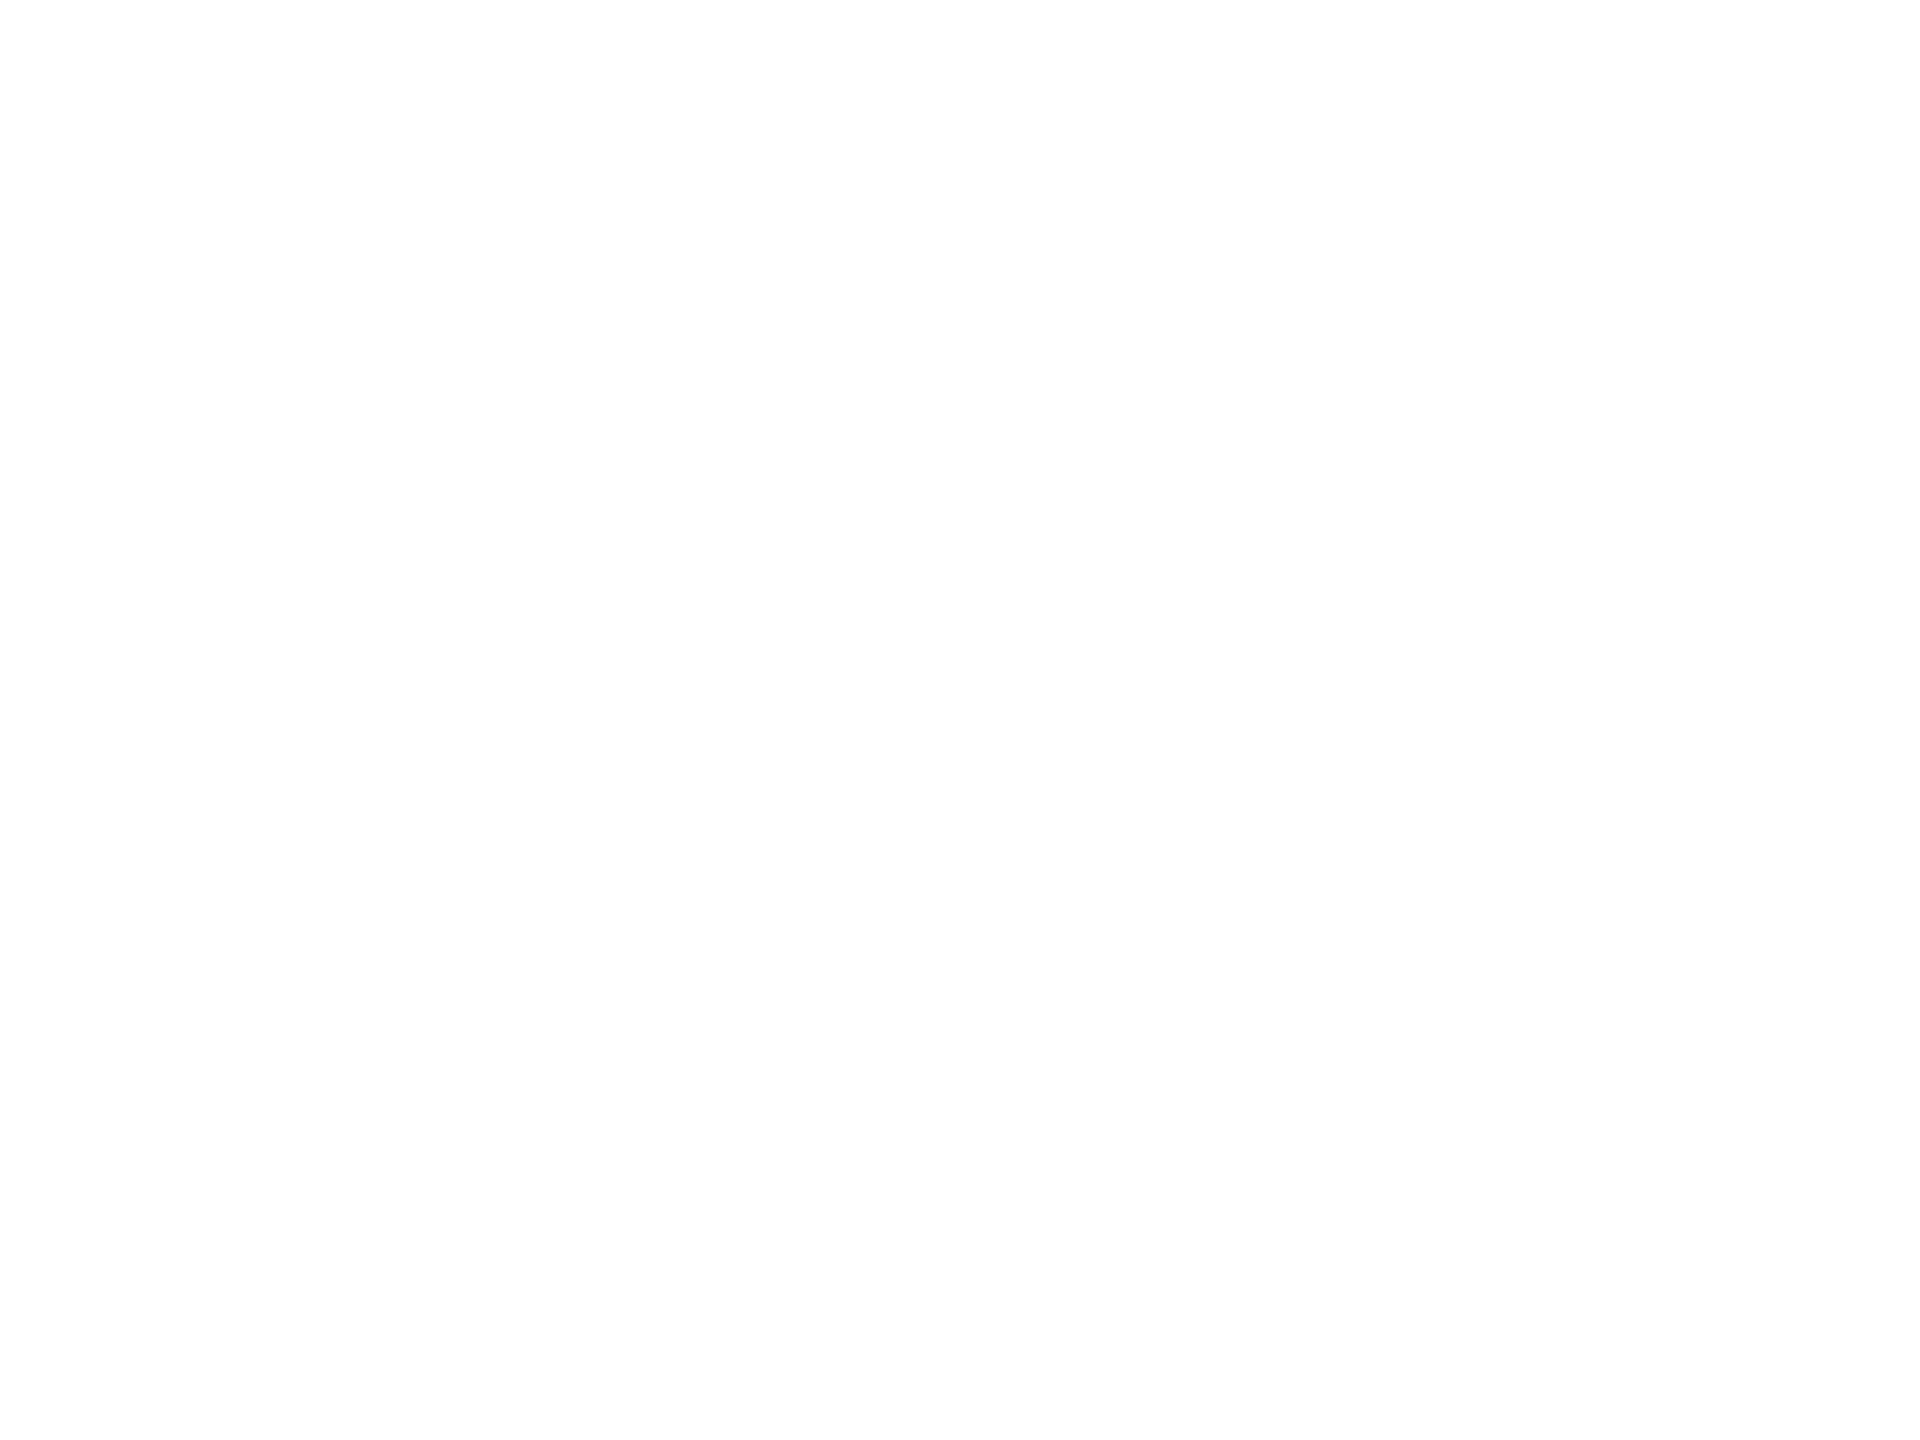 Rise Coaching Logo